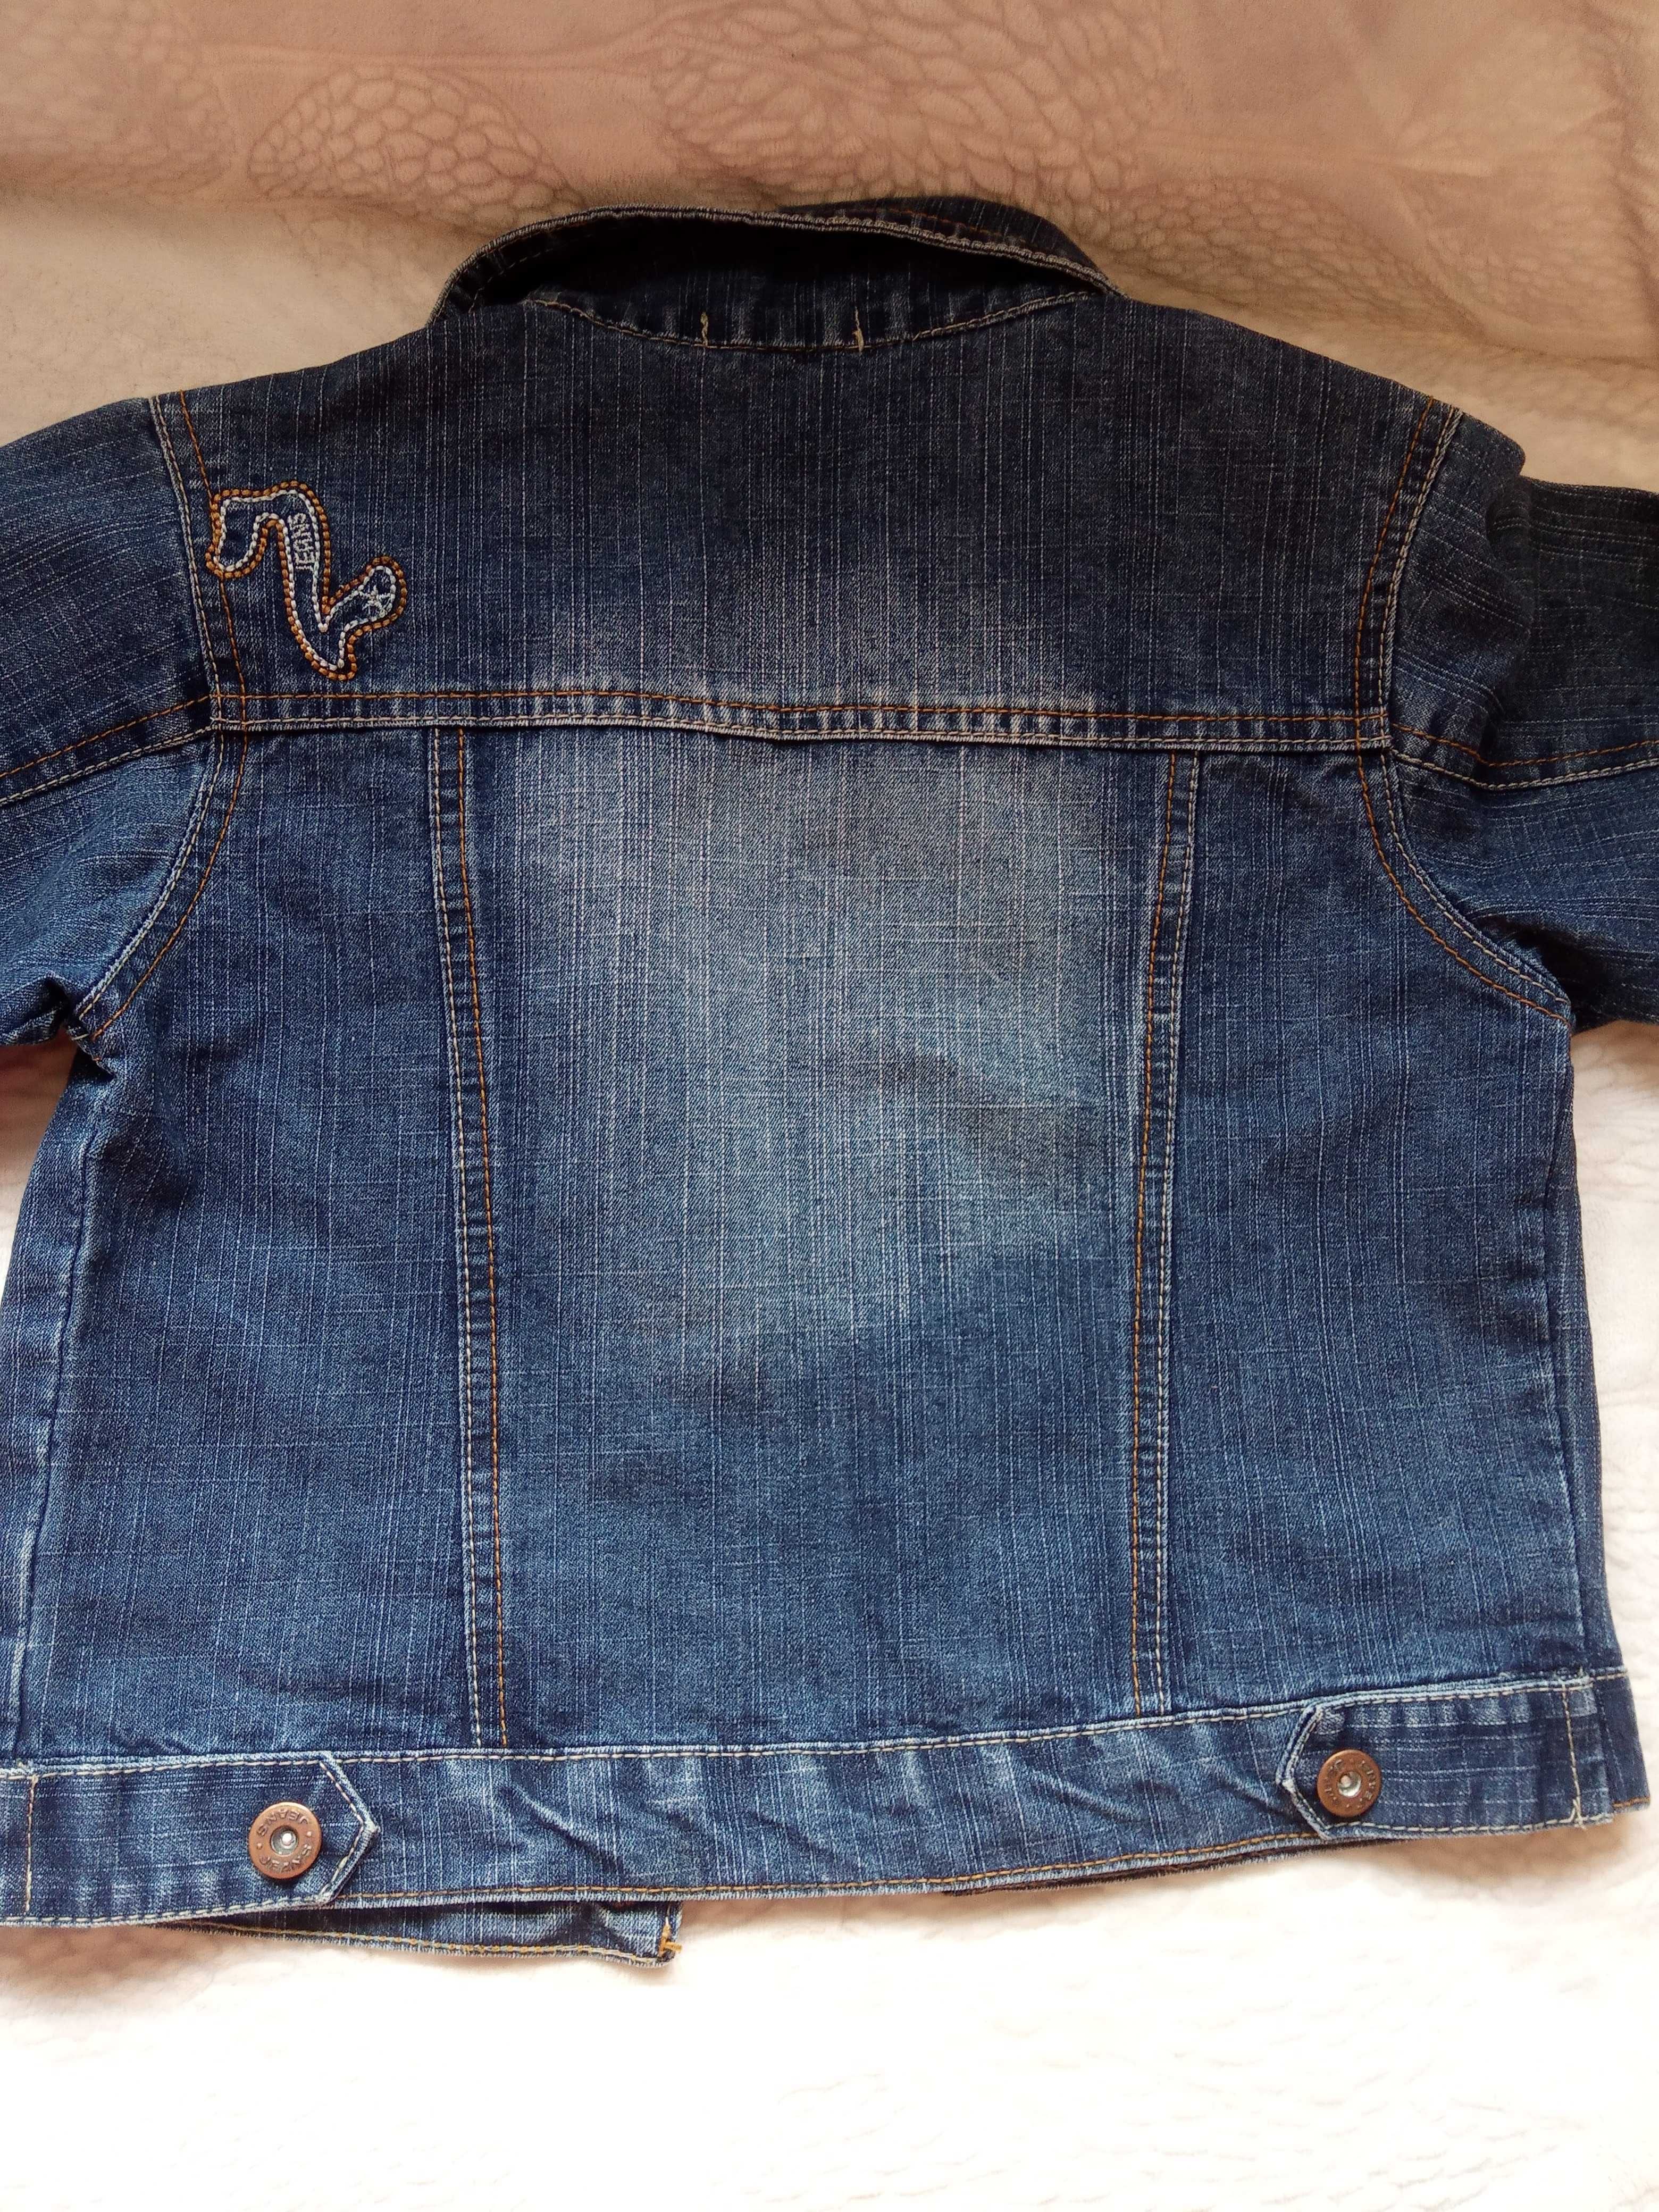 Джинсовий піджак для хлопчика 3-4 роки, стан нового